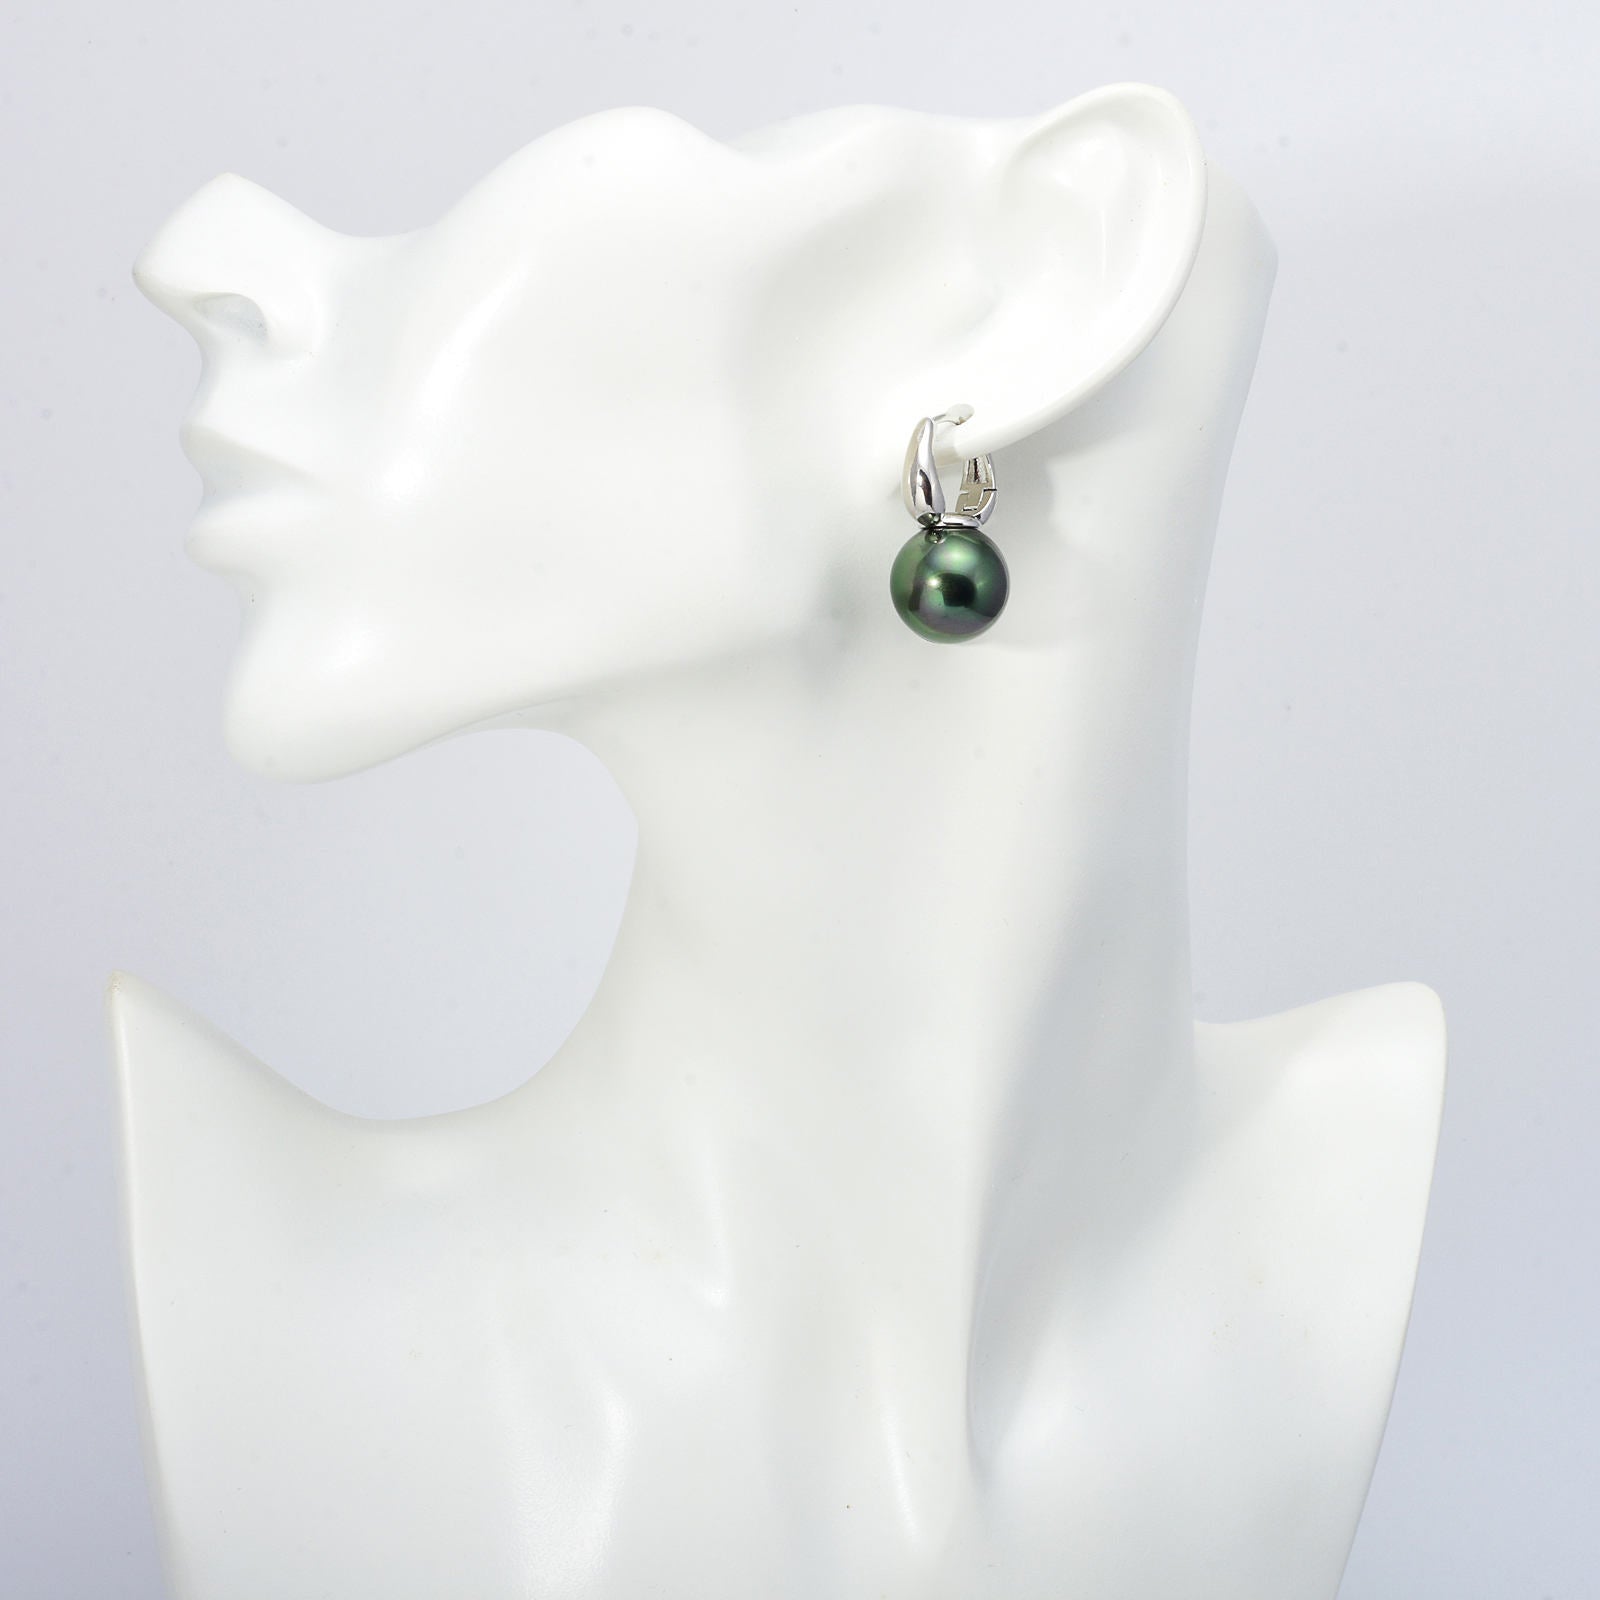 New Elegant Pearl Earrings for Women in 14K Gold Plated (14mm, White ...